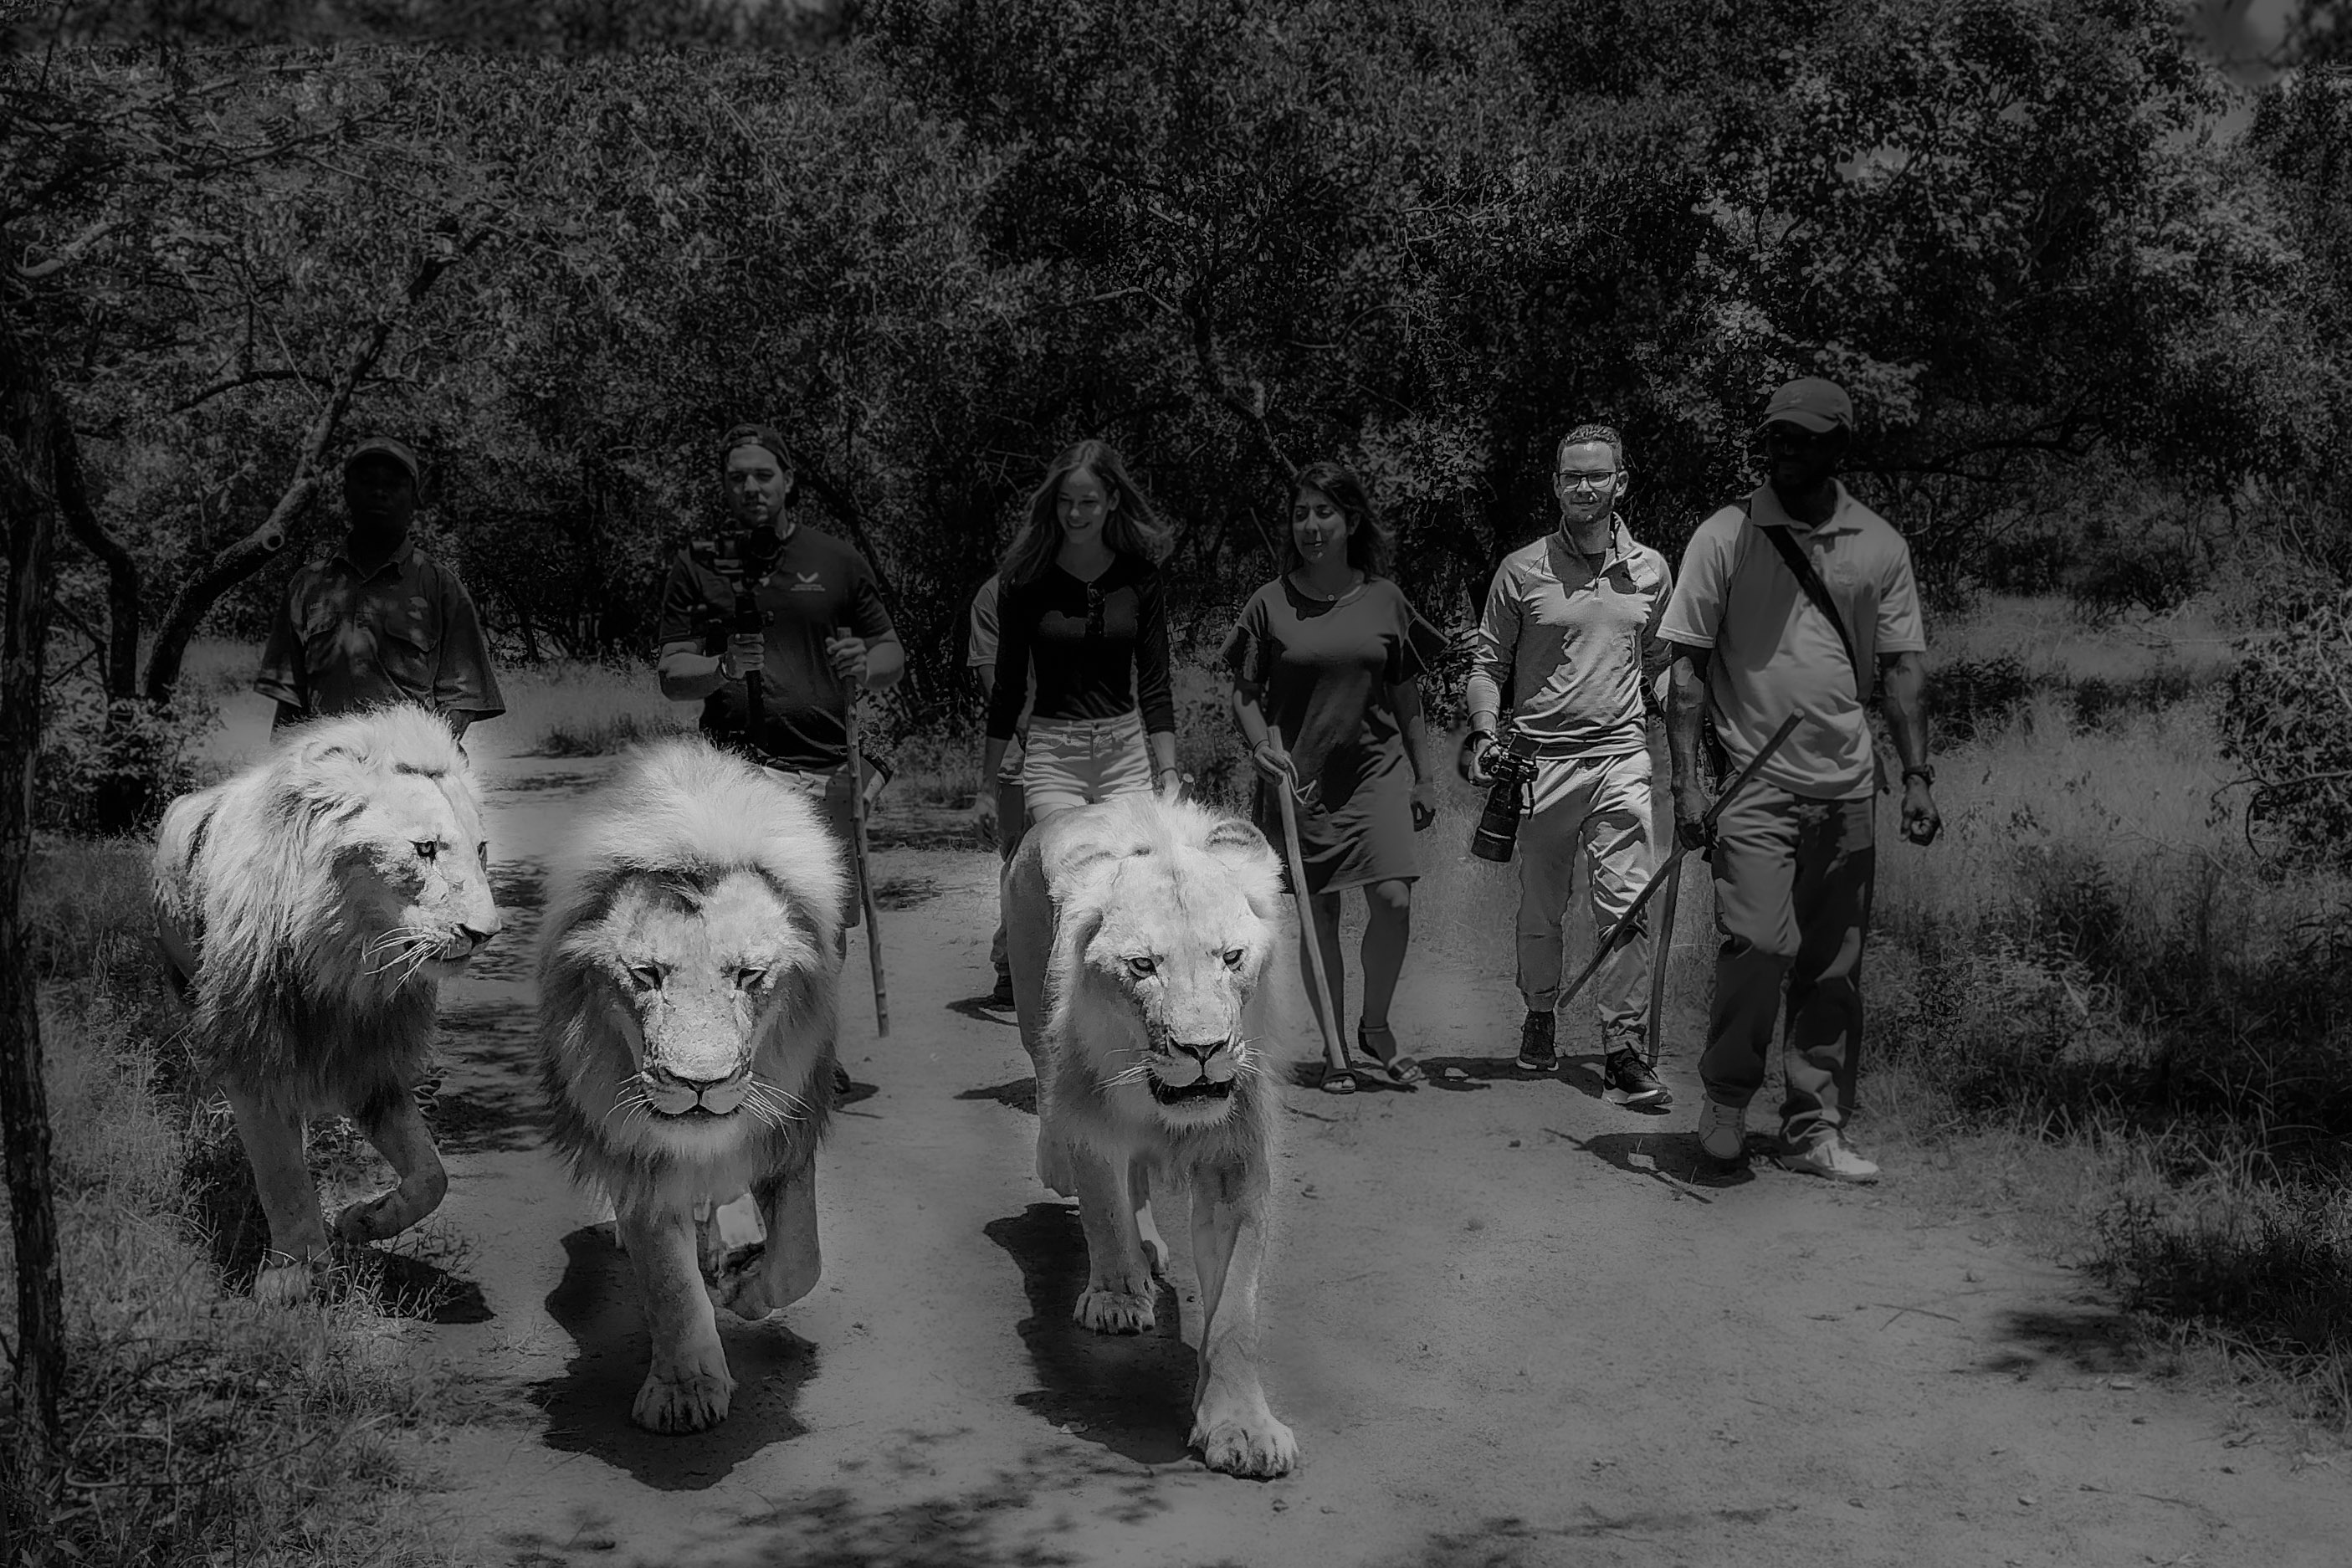 Photographer Thierry Gonzalez Walking with lions | Titled: Thierry Gonzalez Walking with lions | ©2020 Thierry Gonzalez